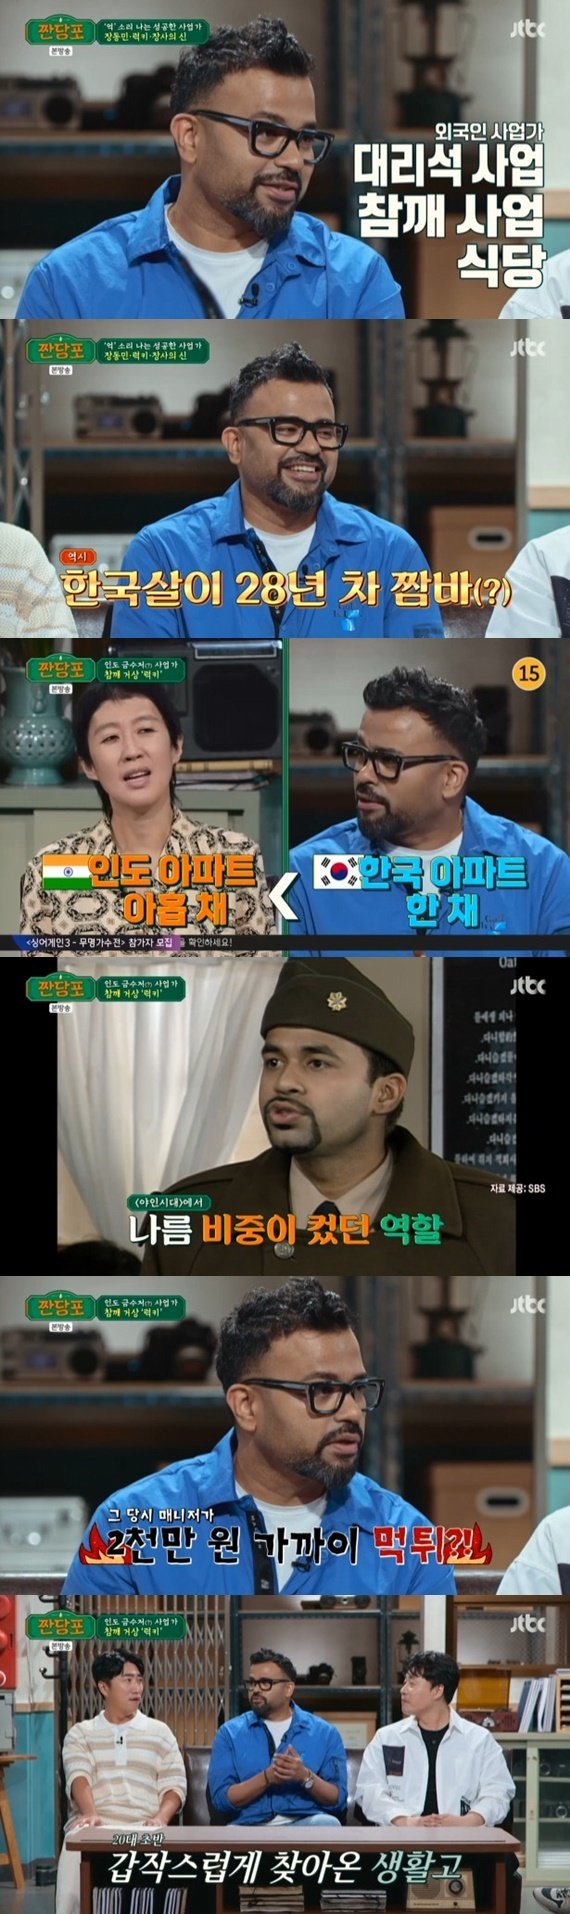 럭키 매니저가 2000만원 먹튀…'야인시대' 출연료 가로채 [RE:TV]